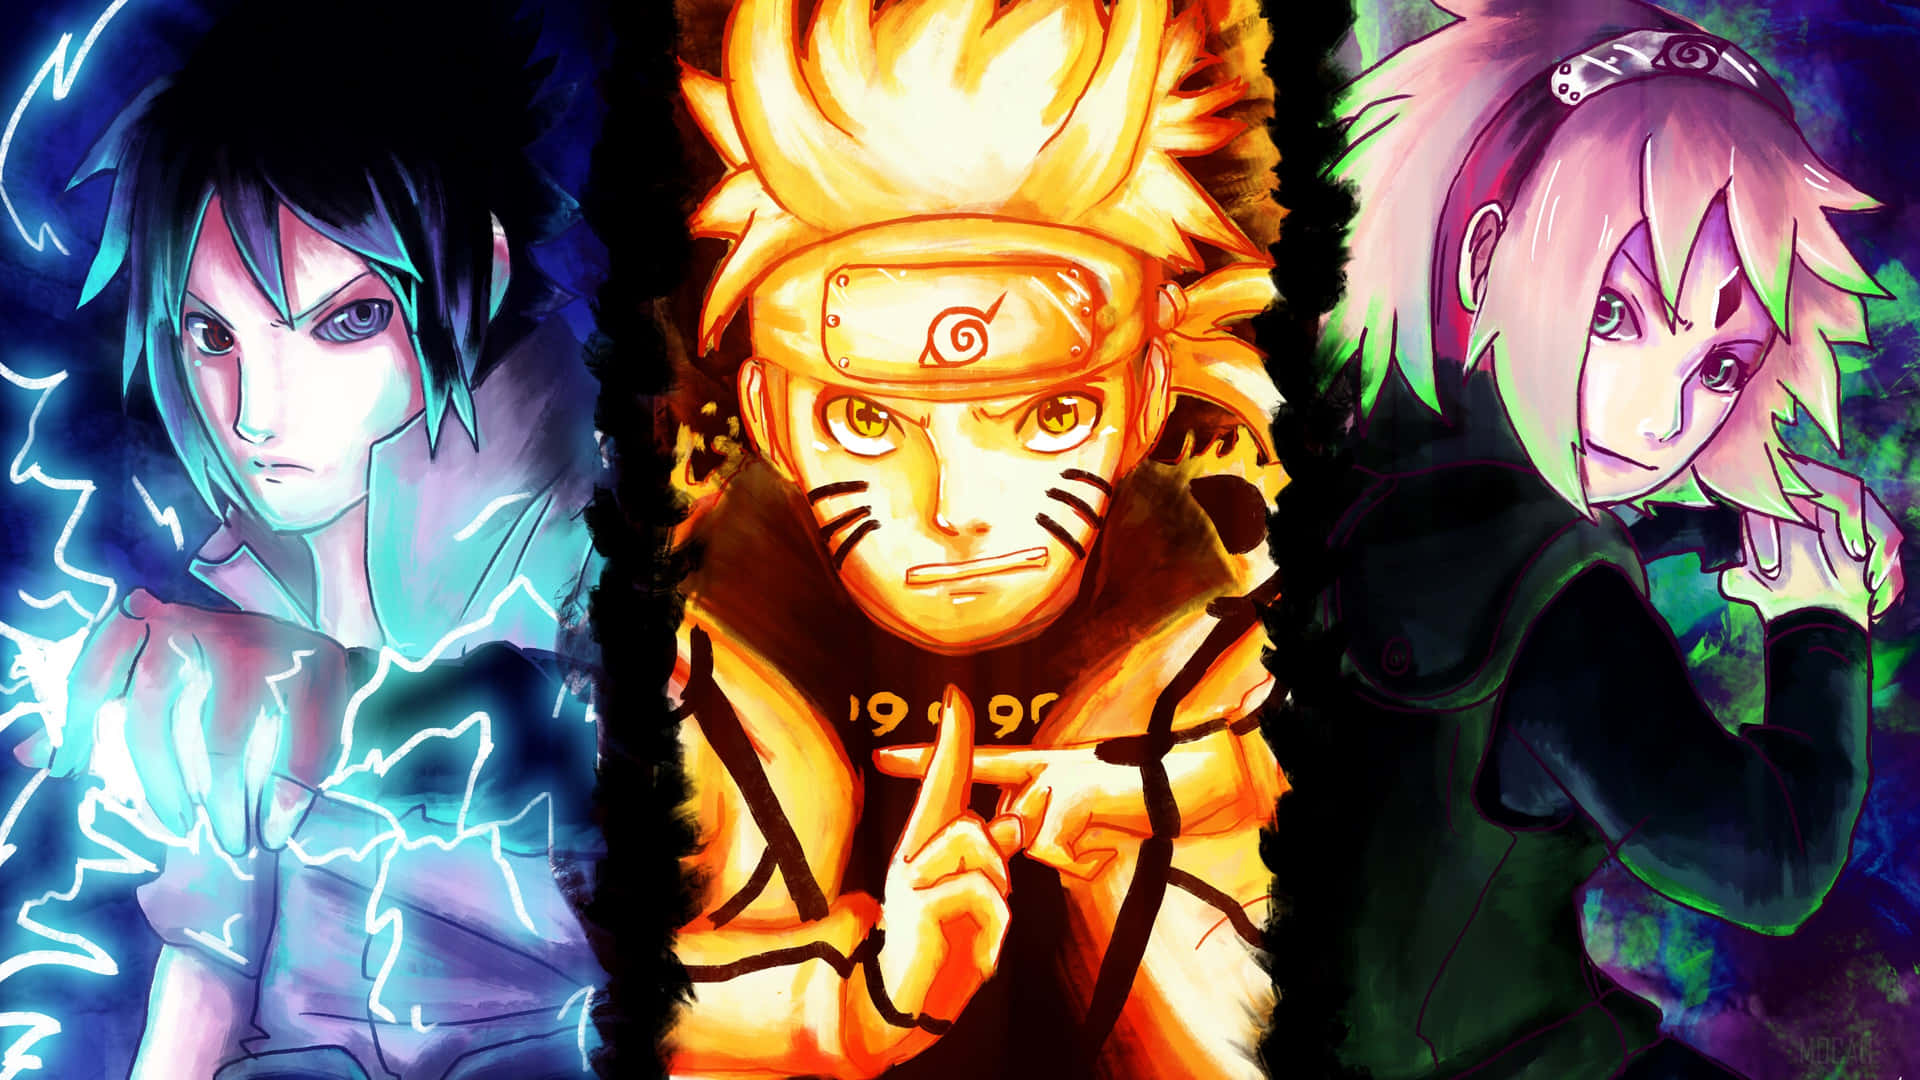 Naruto Uzumaki: Naruto Uzumaki, một trong những nhân vật nổi tiếng trong thế giới anime, với cái tên và tính cách đầy sức sống. Hãy đến xem hình ảnh của anh chàng này để cảm nhận sự dũng cảm, quyết tâm và niềm đam mê của Naruto Uzumaki.